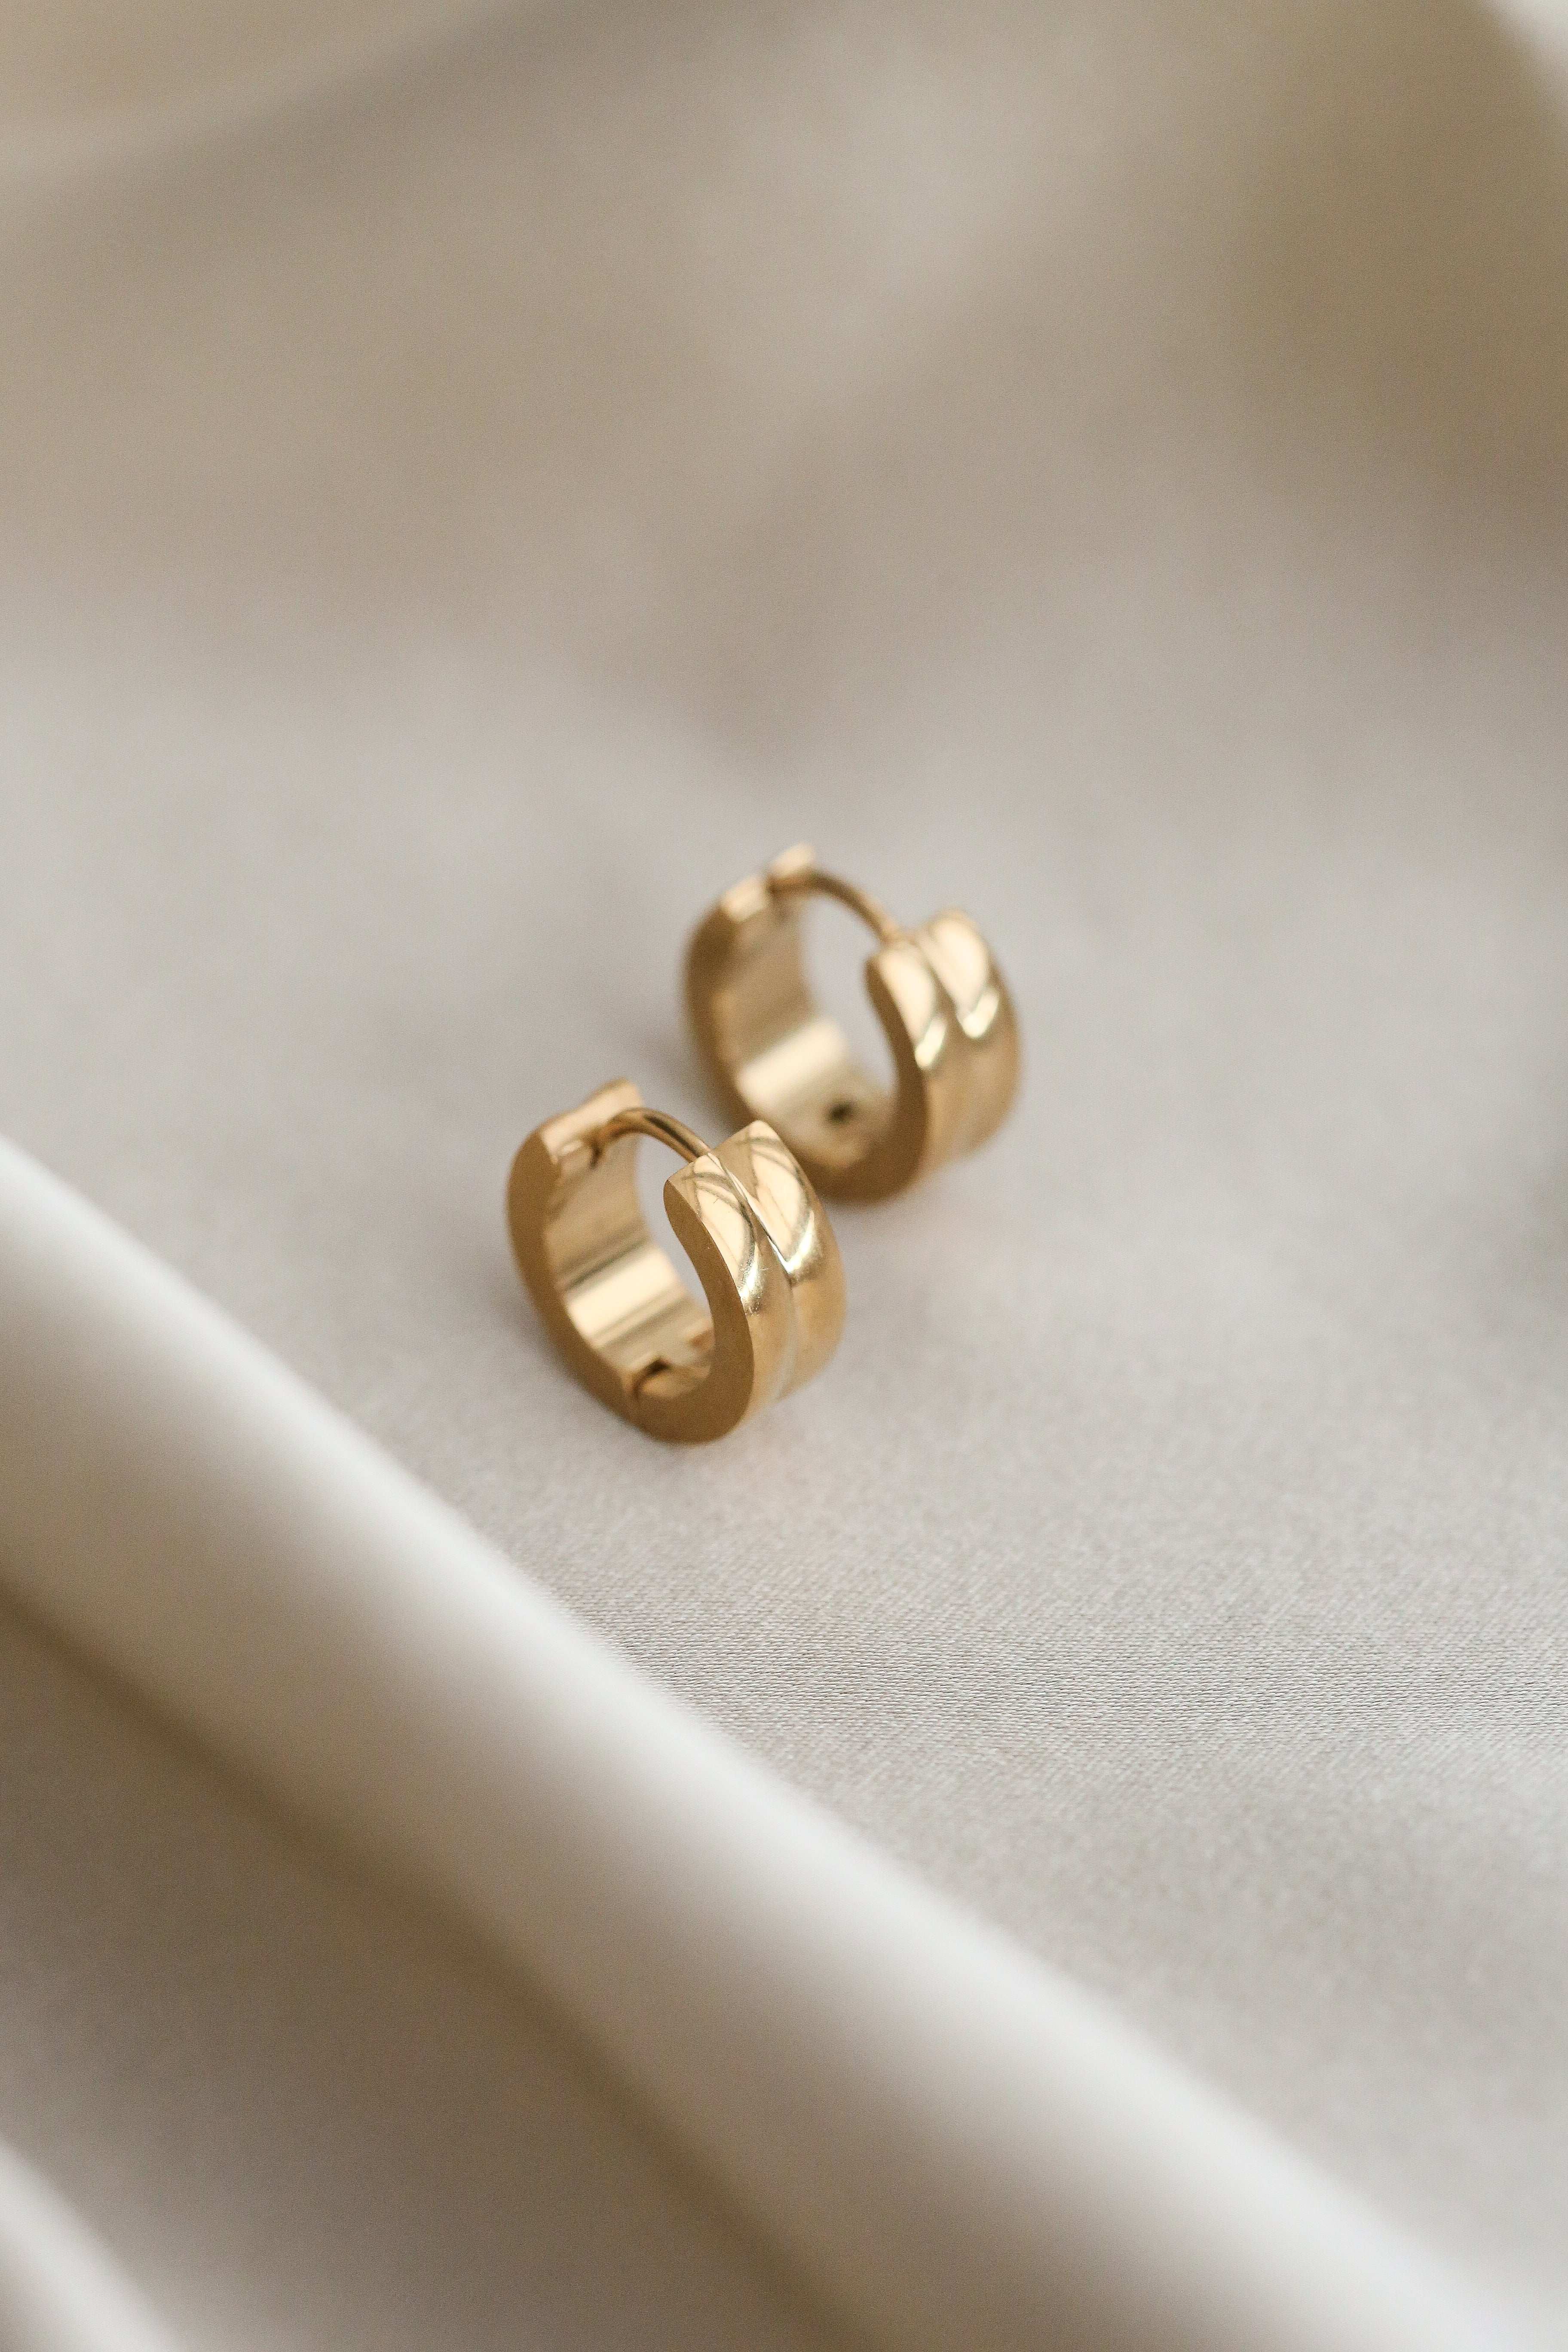 Prima Hoop Earrings - Boutique Minimaliste has waterproof, durable, elegant and vintage inspired jewelry